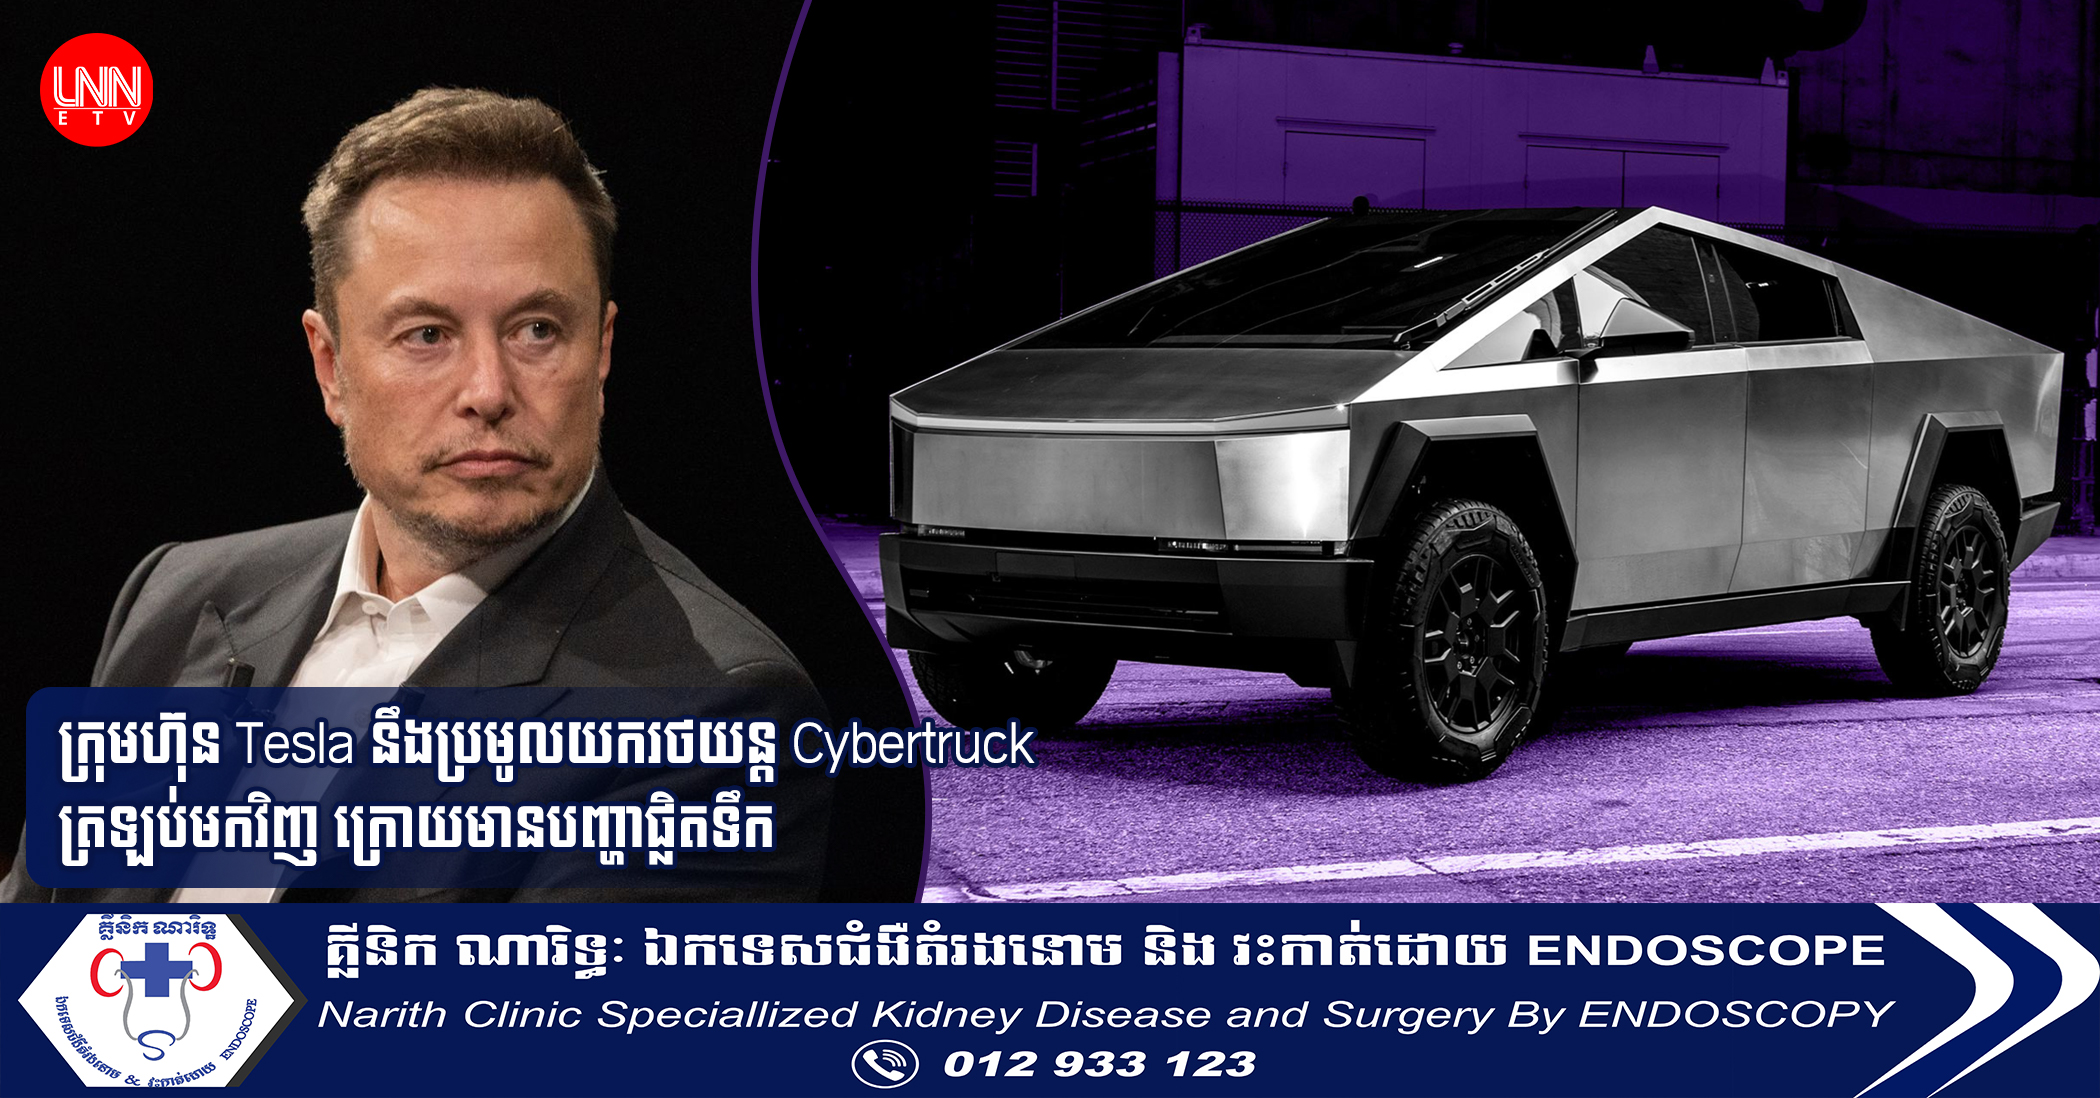 ក្រុមហ៊ុន Tesla នឹងប្រមូលយករថយន្ត Cybertruck ត្រឡប់មកវិញ ក្រោយមានបញ្ហាផ្លិតទឹក